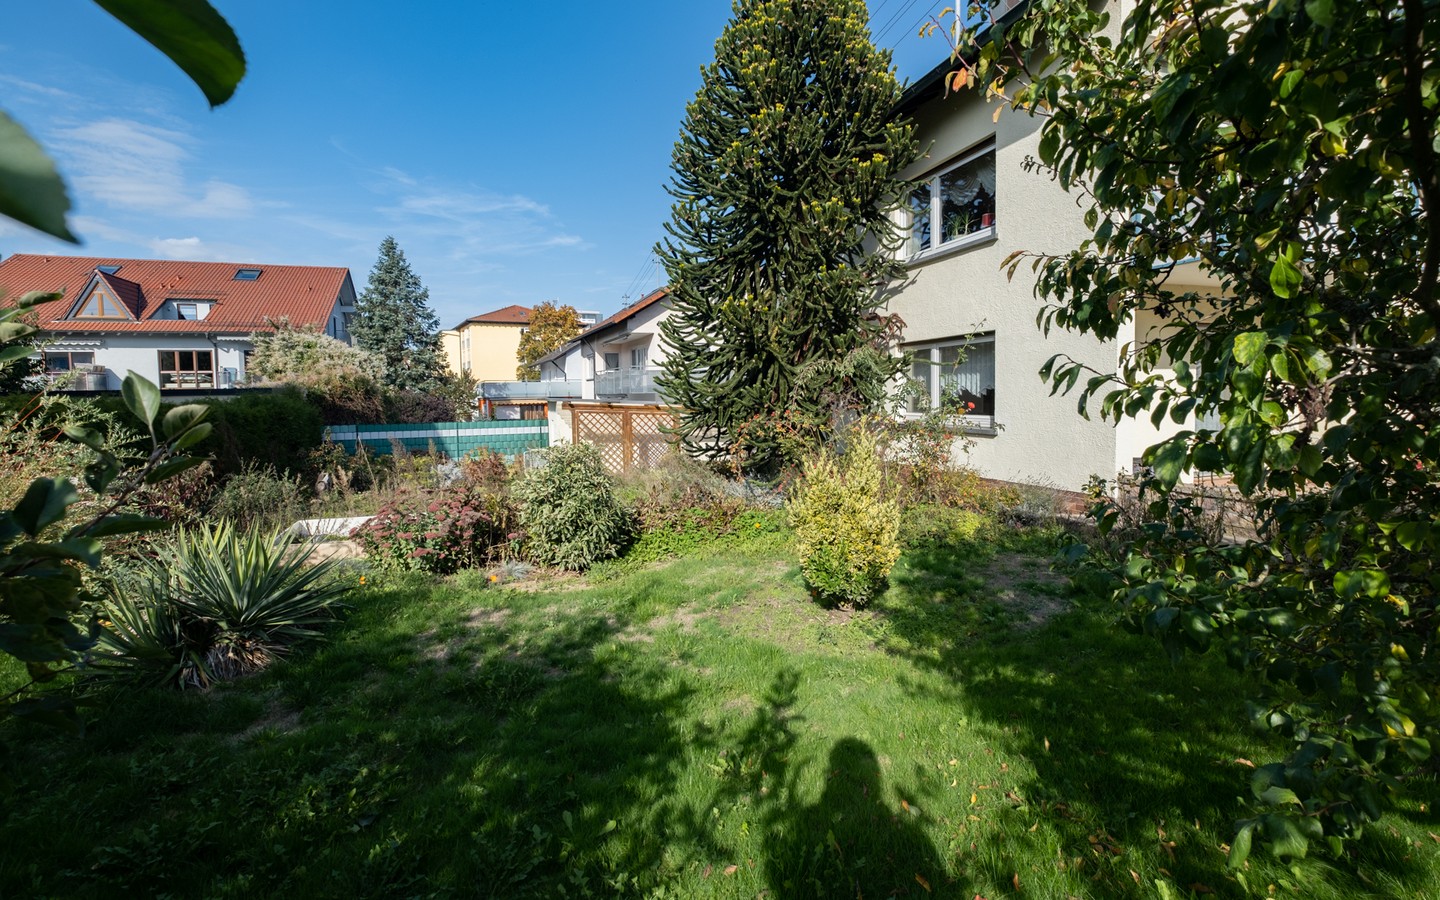 Garten - Direkt am Kurpark in Bad Rappenau: Freistehendes Wohnhaus in ruhiger Wohnlage mit herrlichem Garten